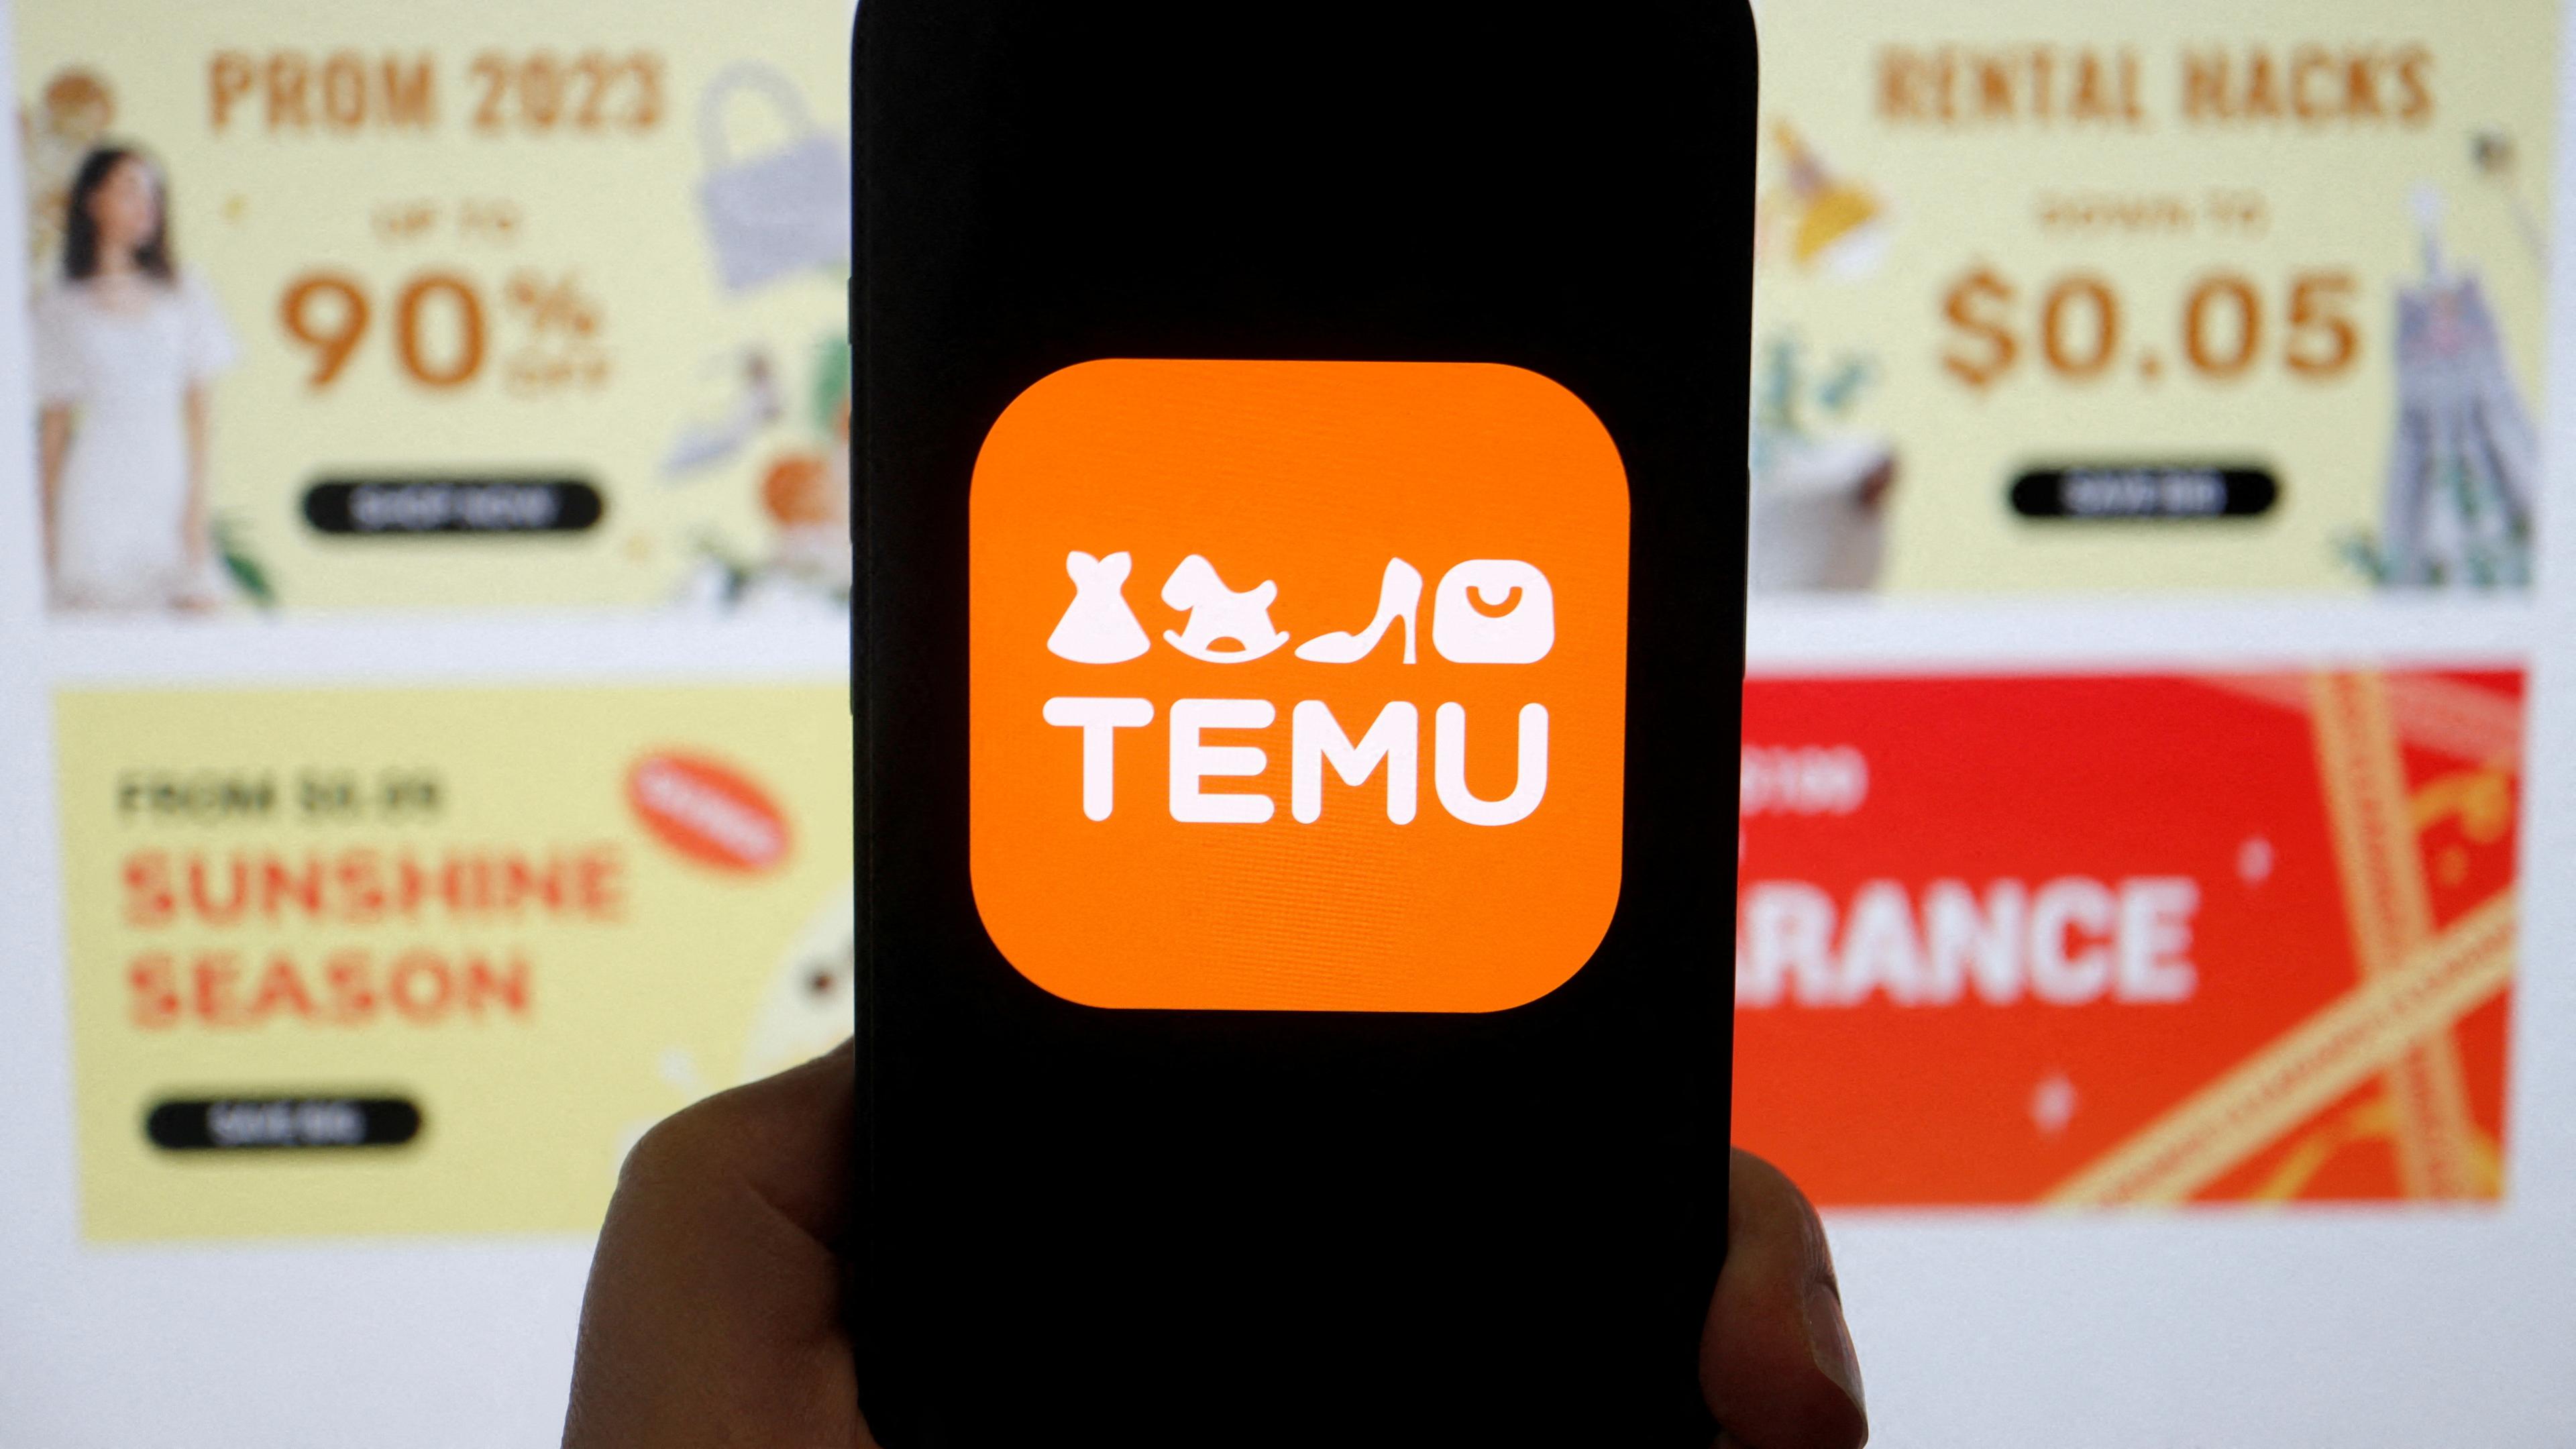 Das Logo der chinesischen Shopping-App "Temu"